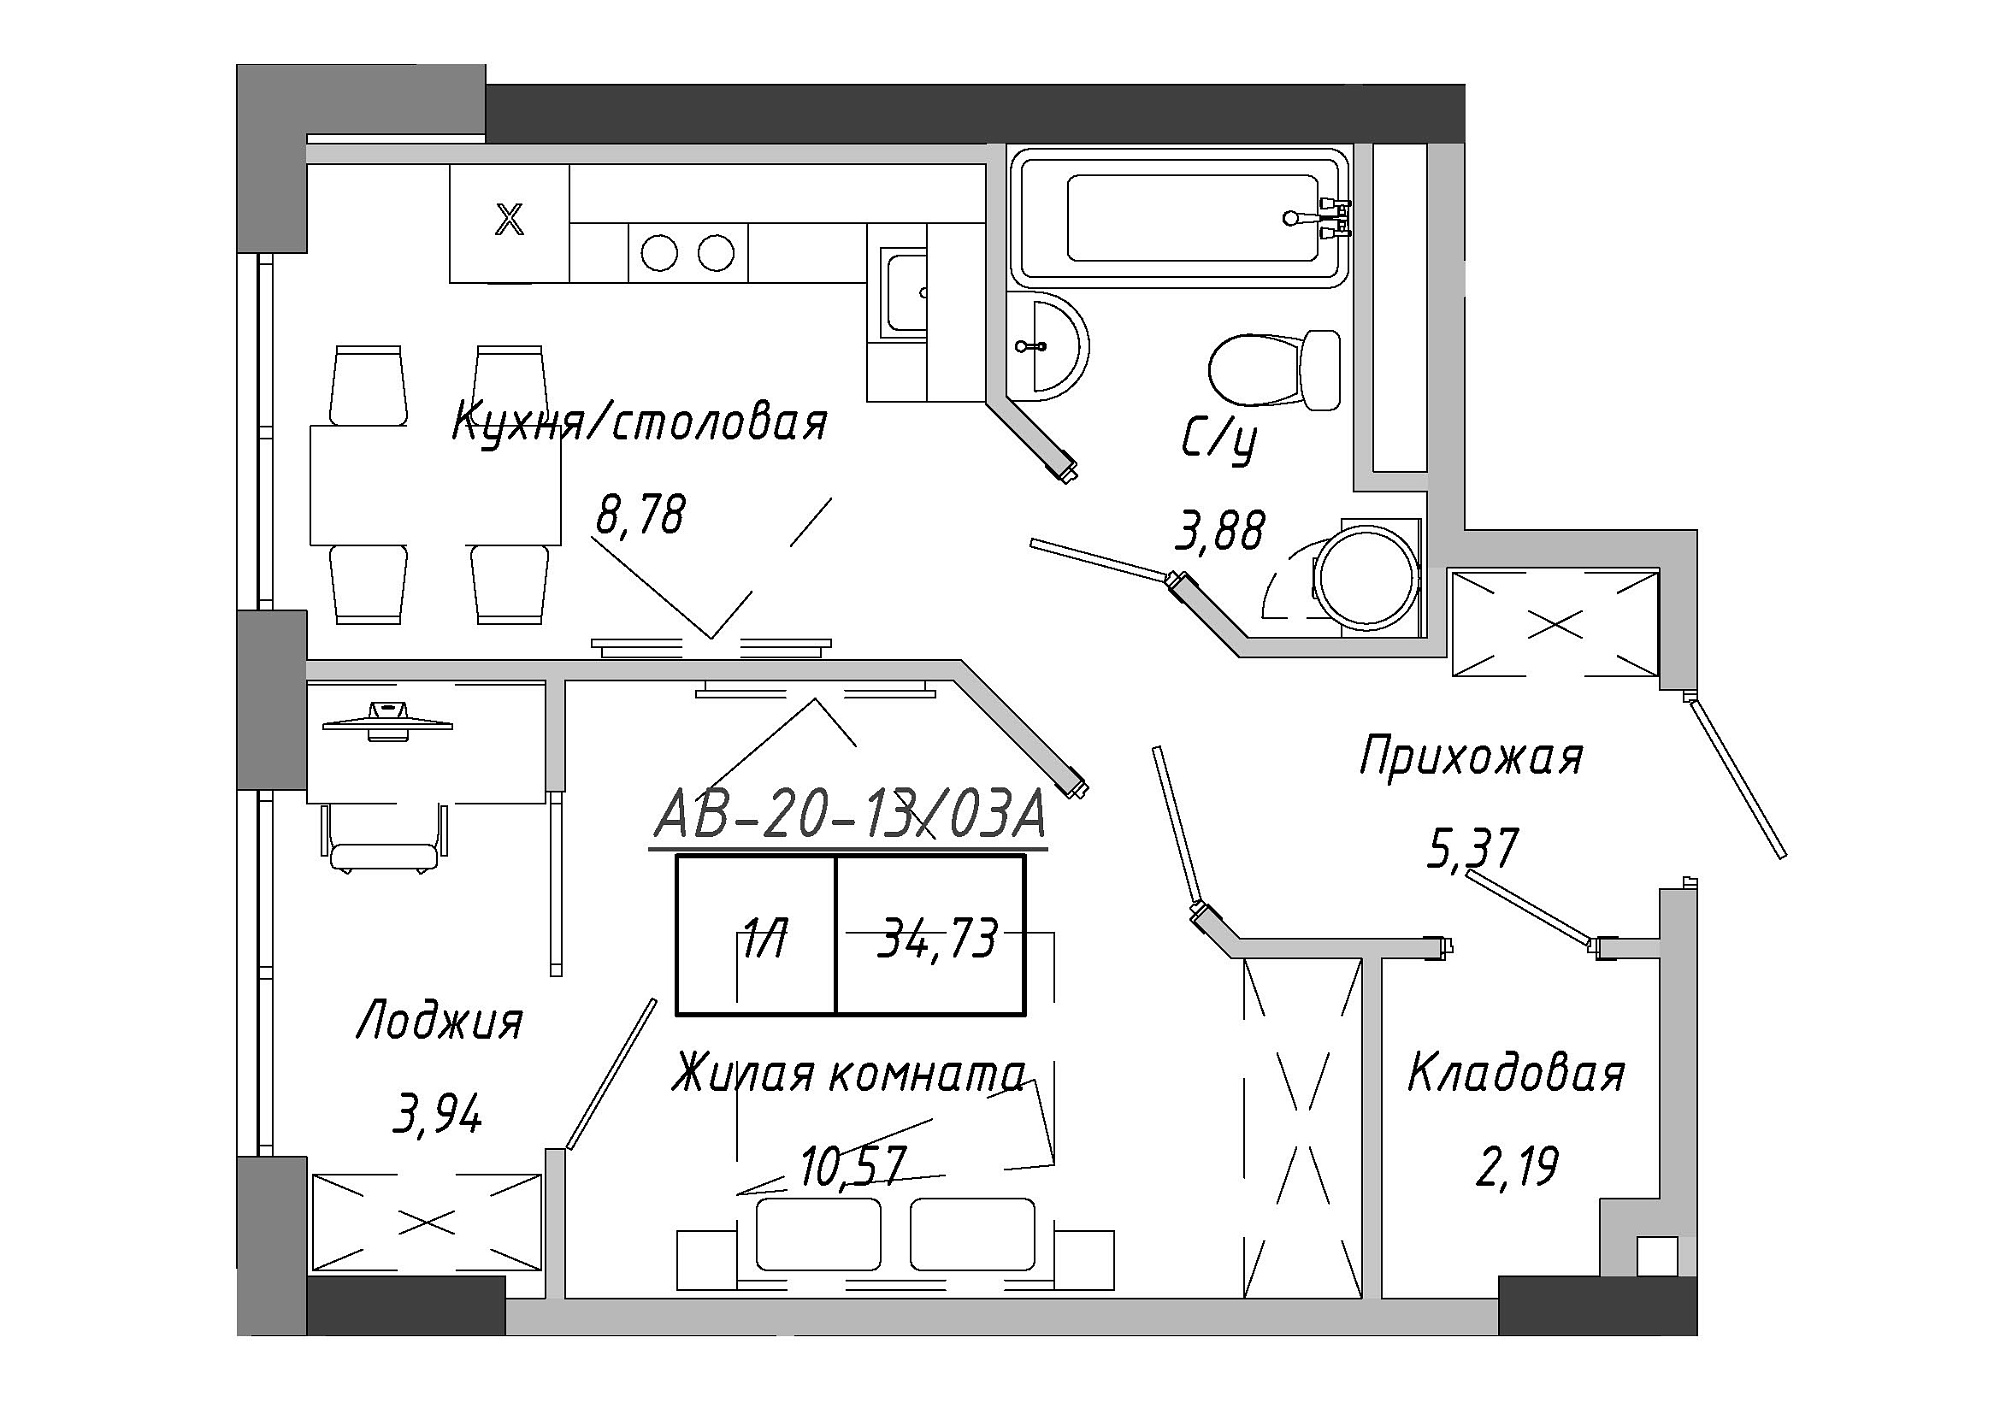 Планування 1-к квартира площею 34.73м2, AB-20-13/0103a.